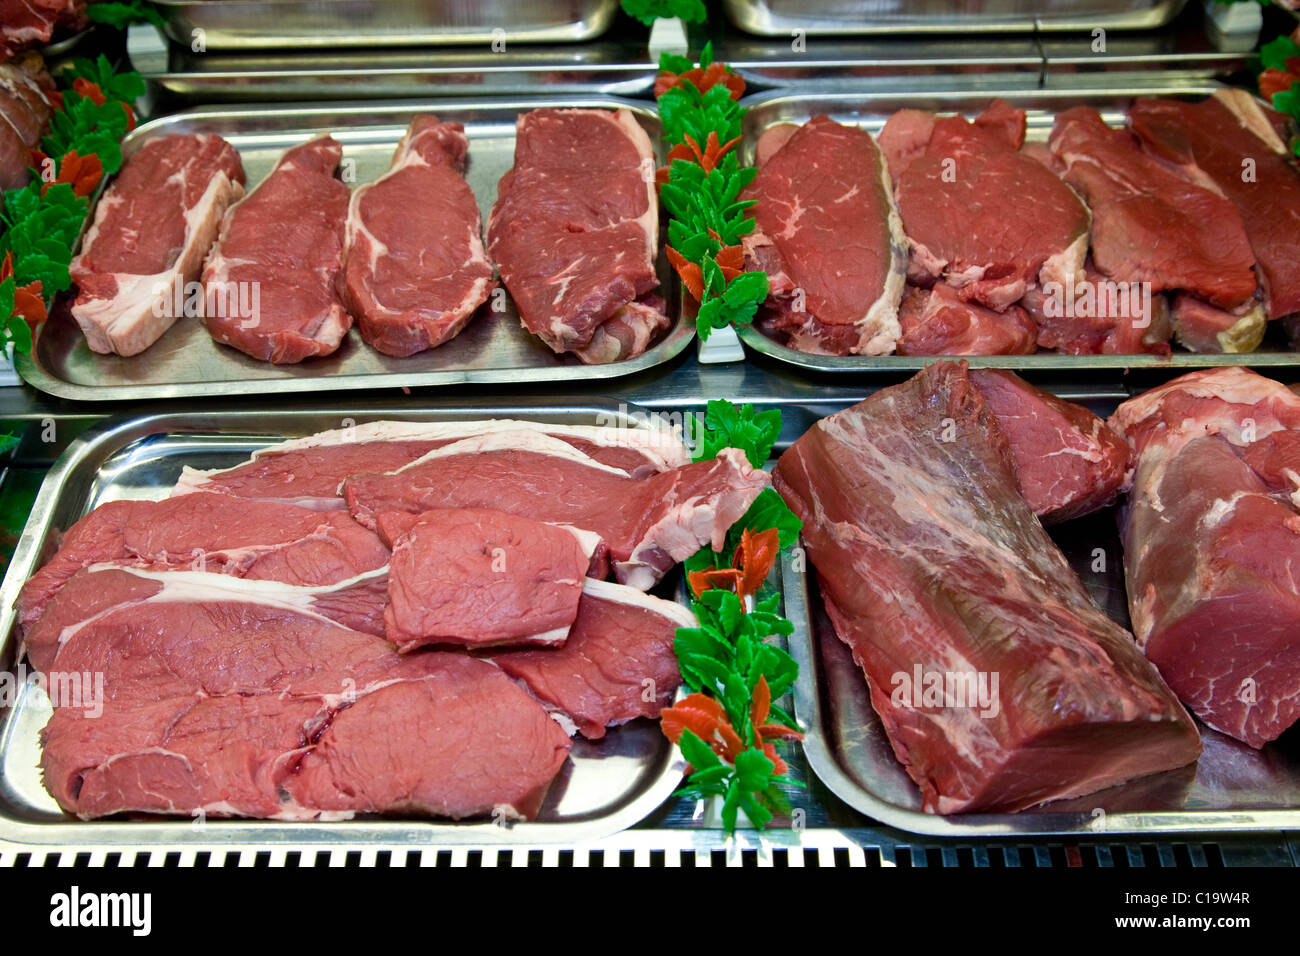 Tagli di carni bovine sul display in un negozio di macellaio Foto Stock